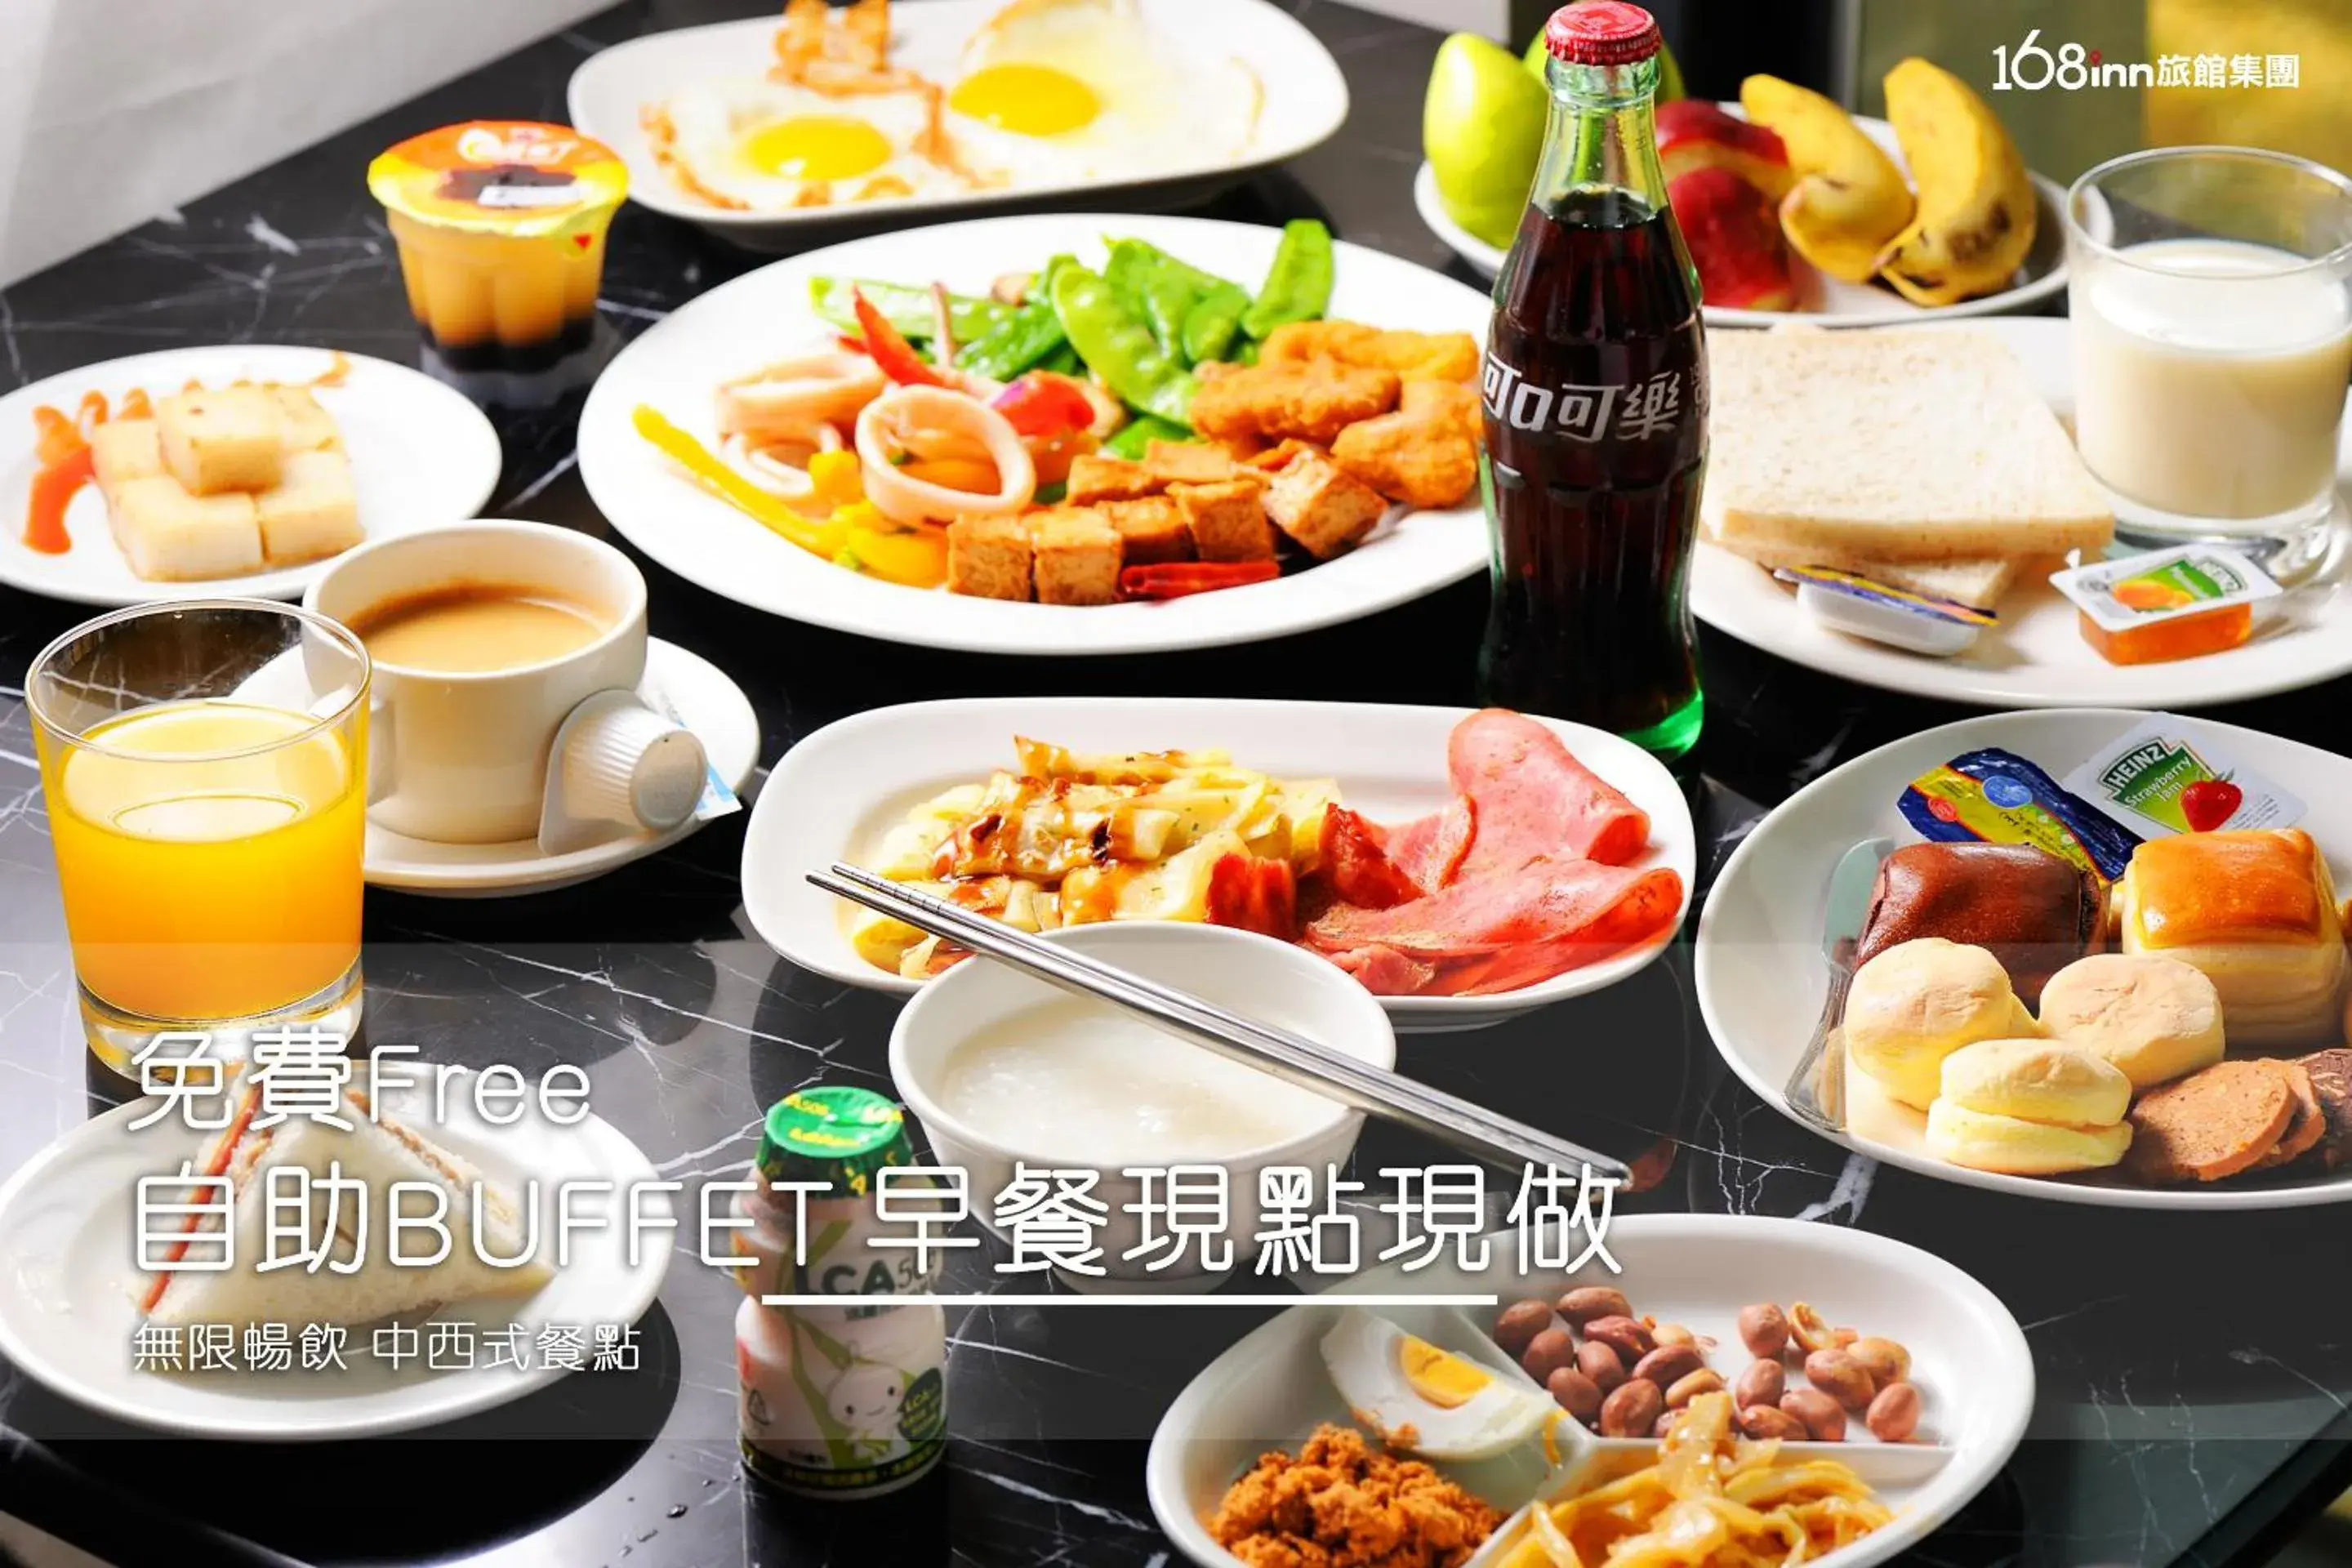 Buffet breakfast in 168 Motel-PingZhen